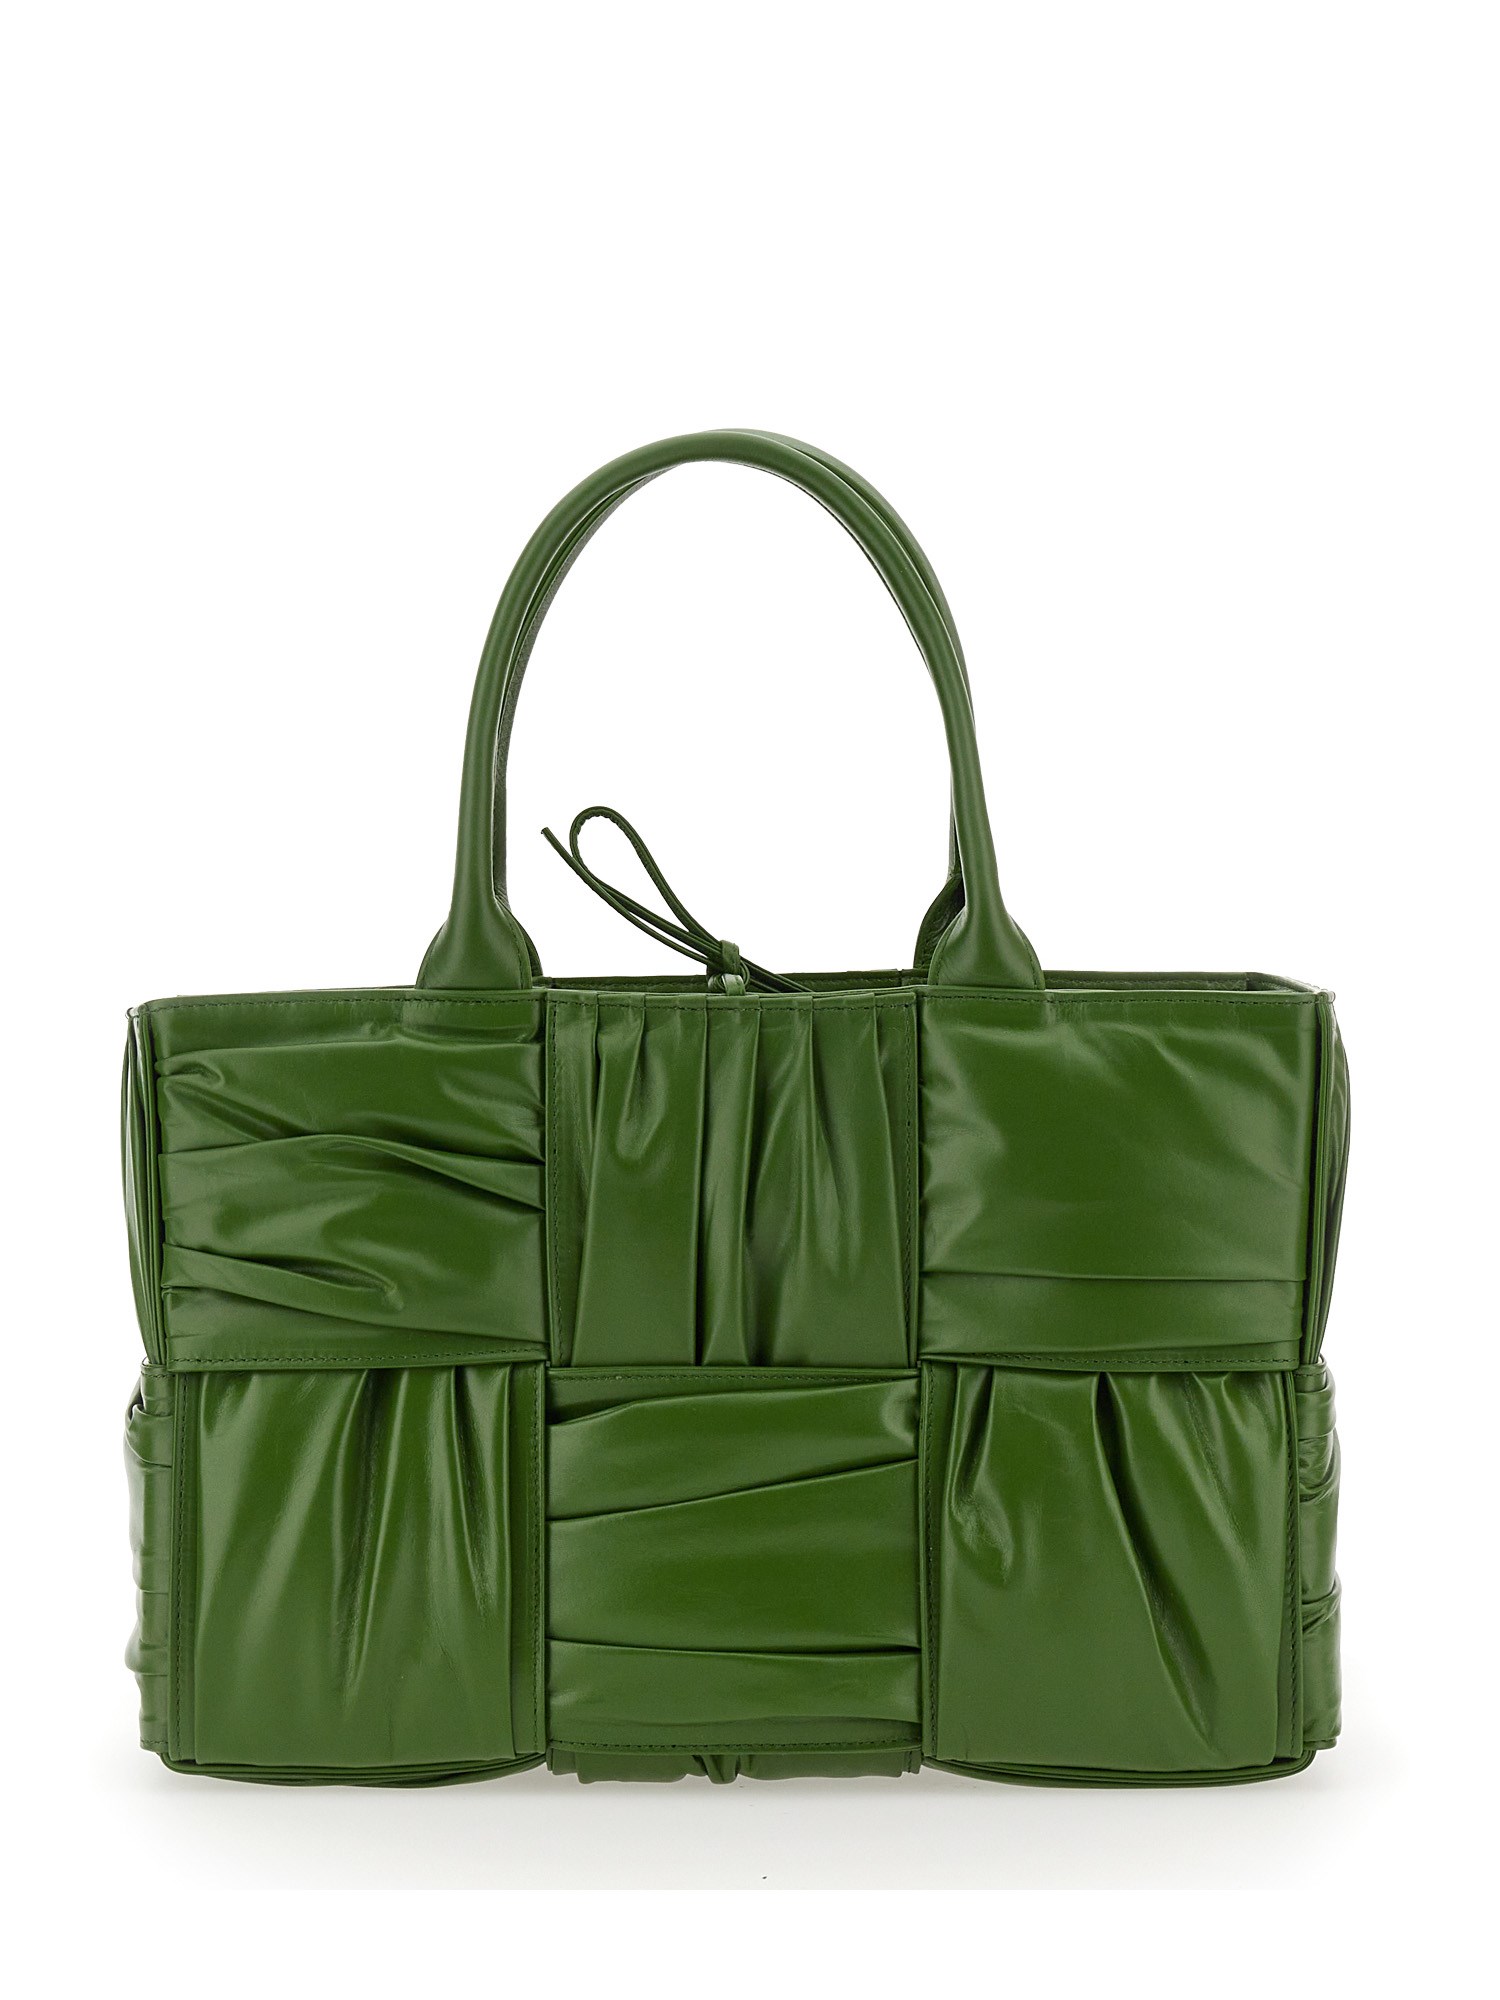 Bottega Veneta Small Bow Tote Bag In Green